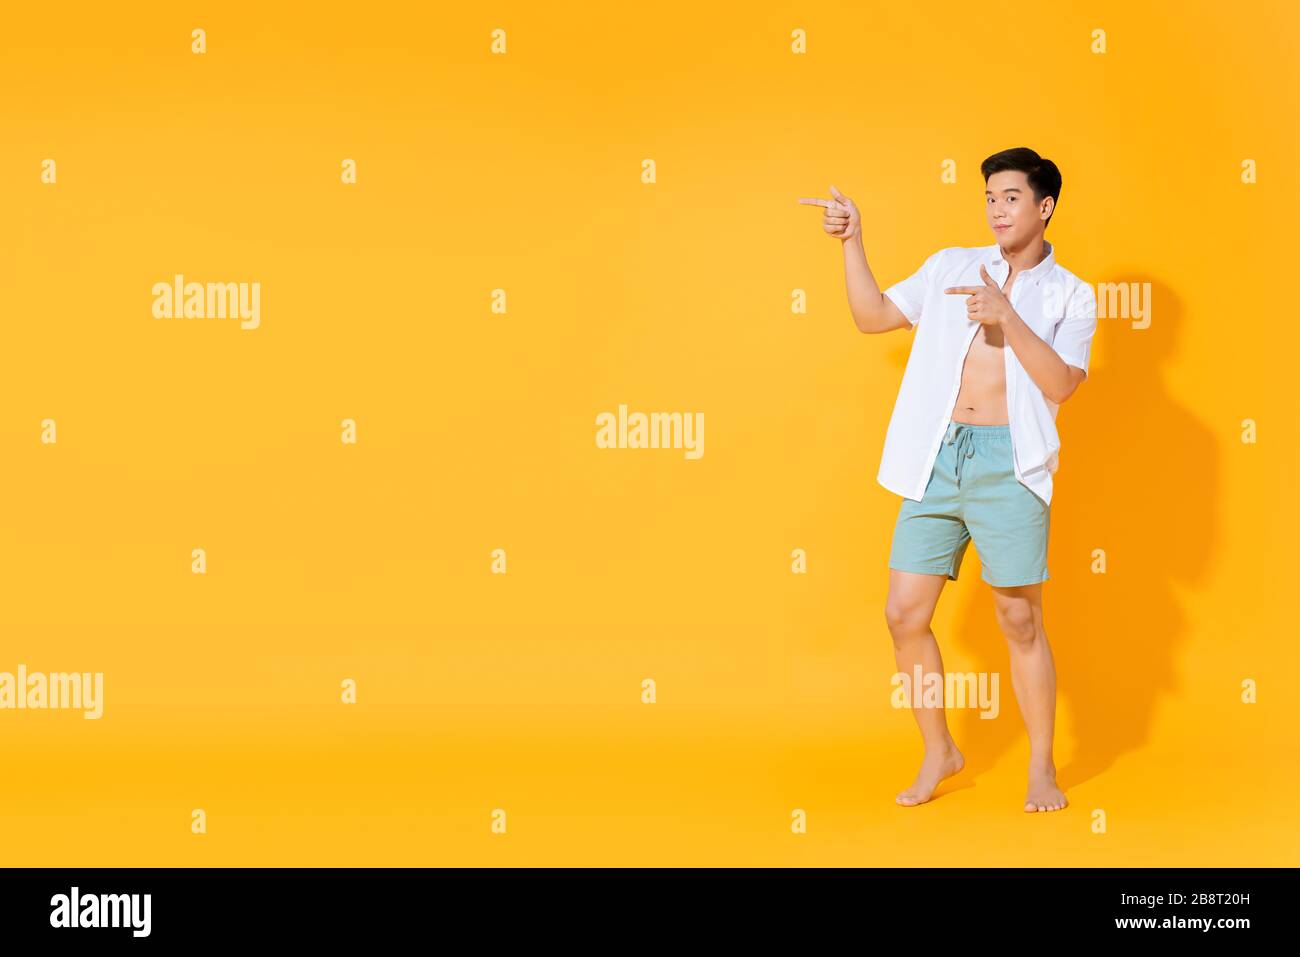 Corps entier de jeune homme asiatique dans une tenue d'été décontractée pointant vers les mains pour copier l'espace de côté sur fond jaune coloré Banque D'Images